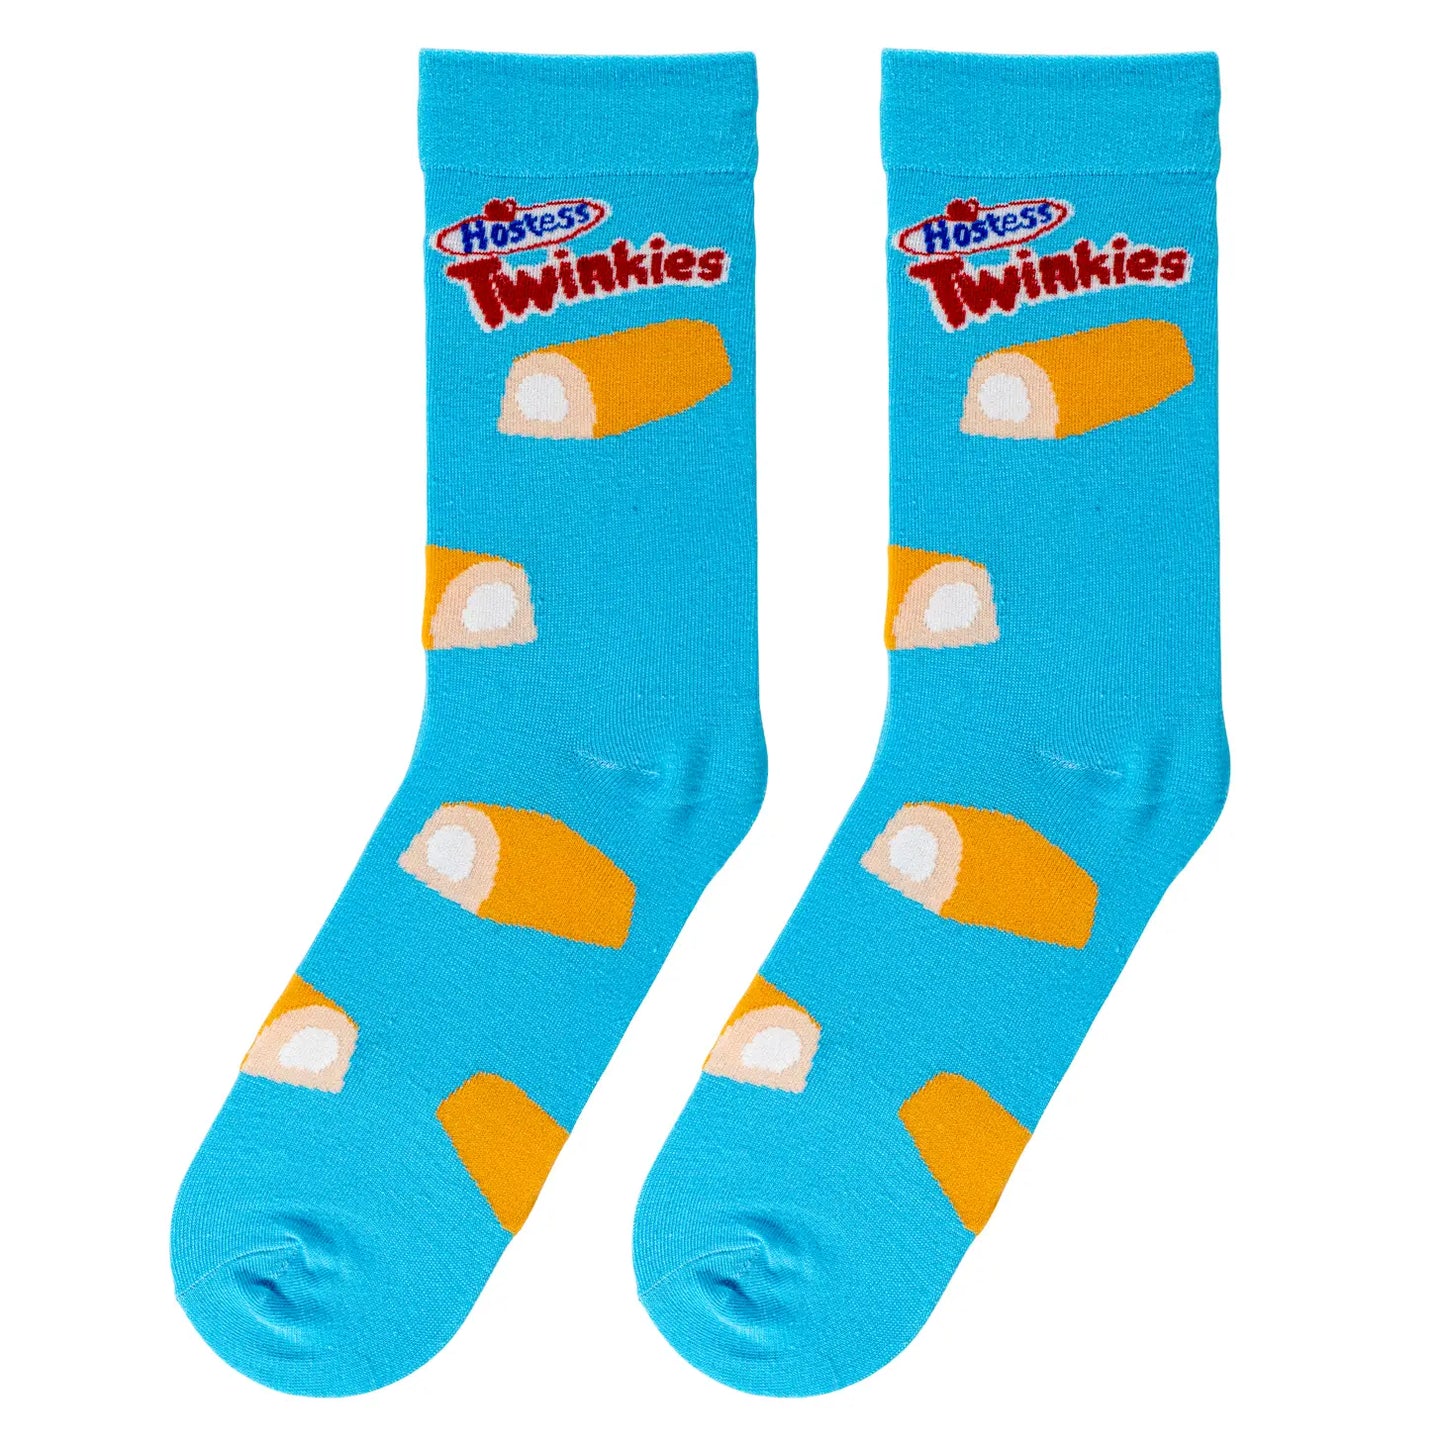 Socks - Large Crew - Twinkies